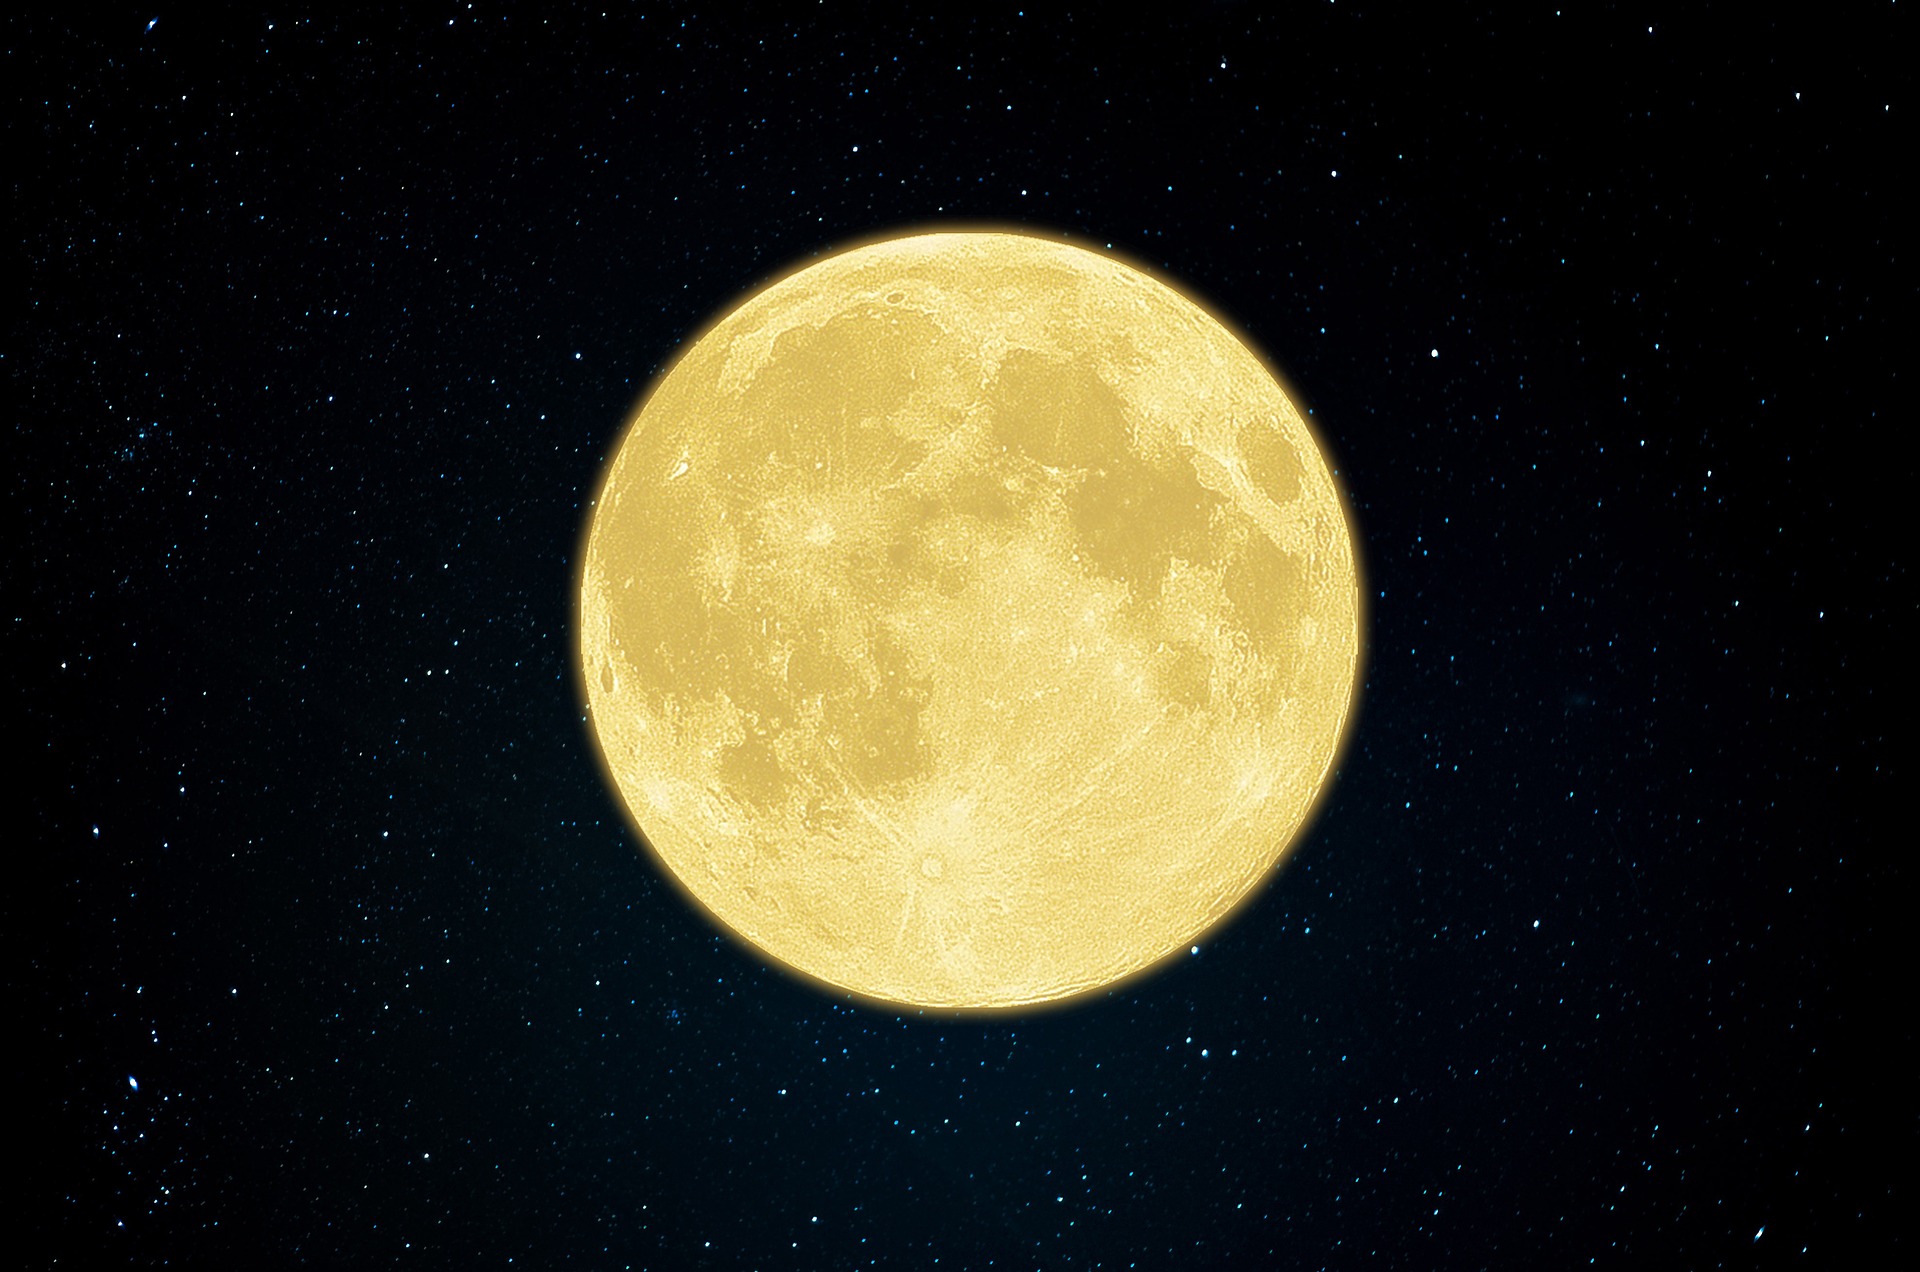 清晰的月亮照片桌布(103年中秋節拍攝)